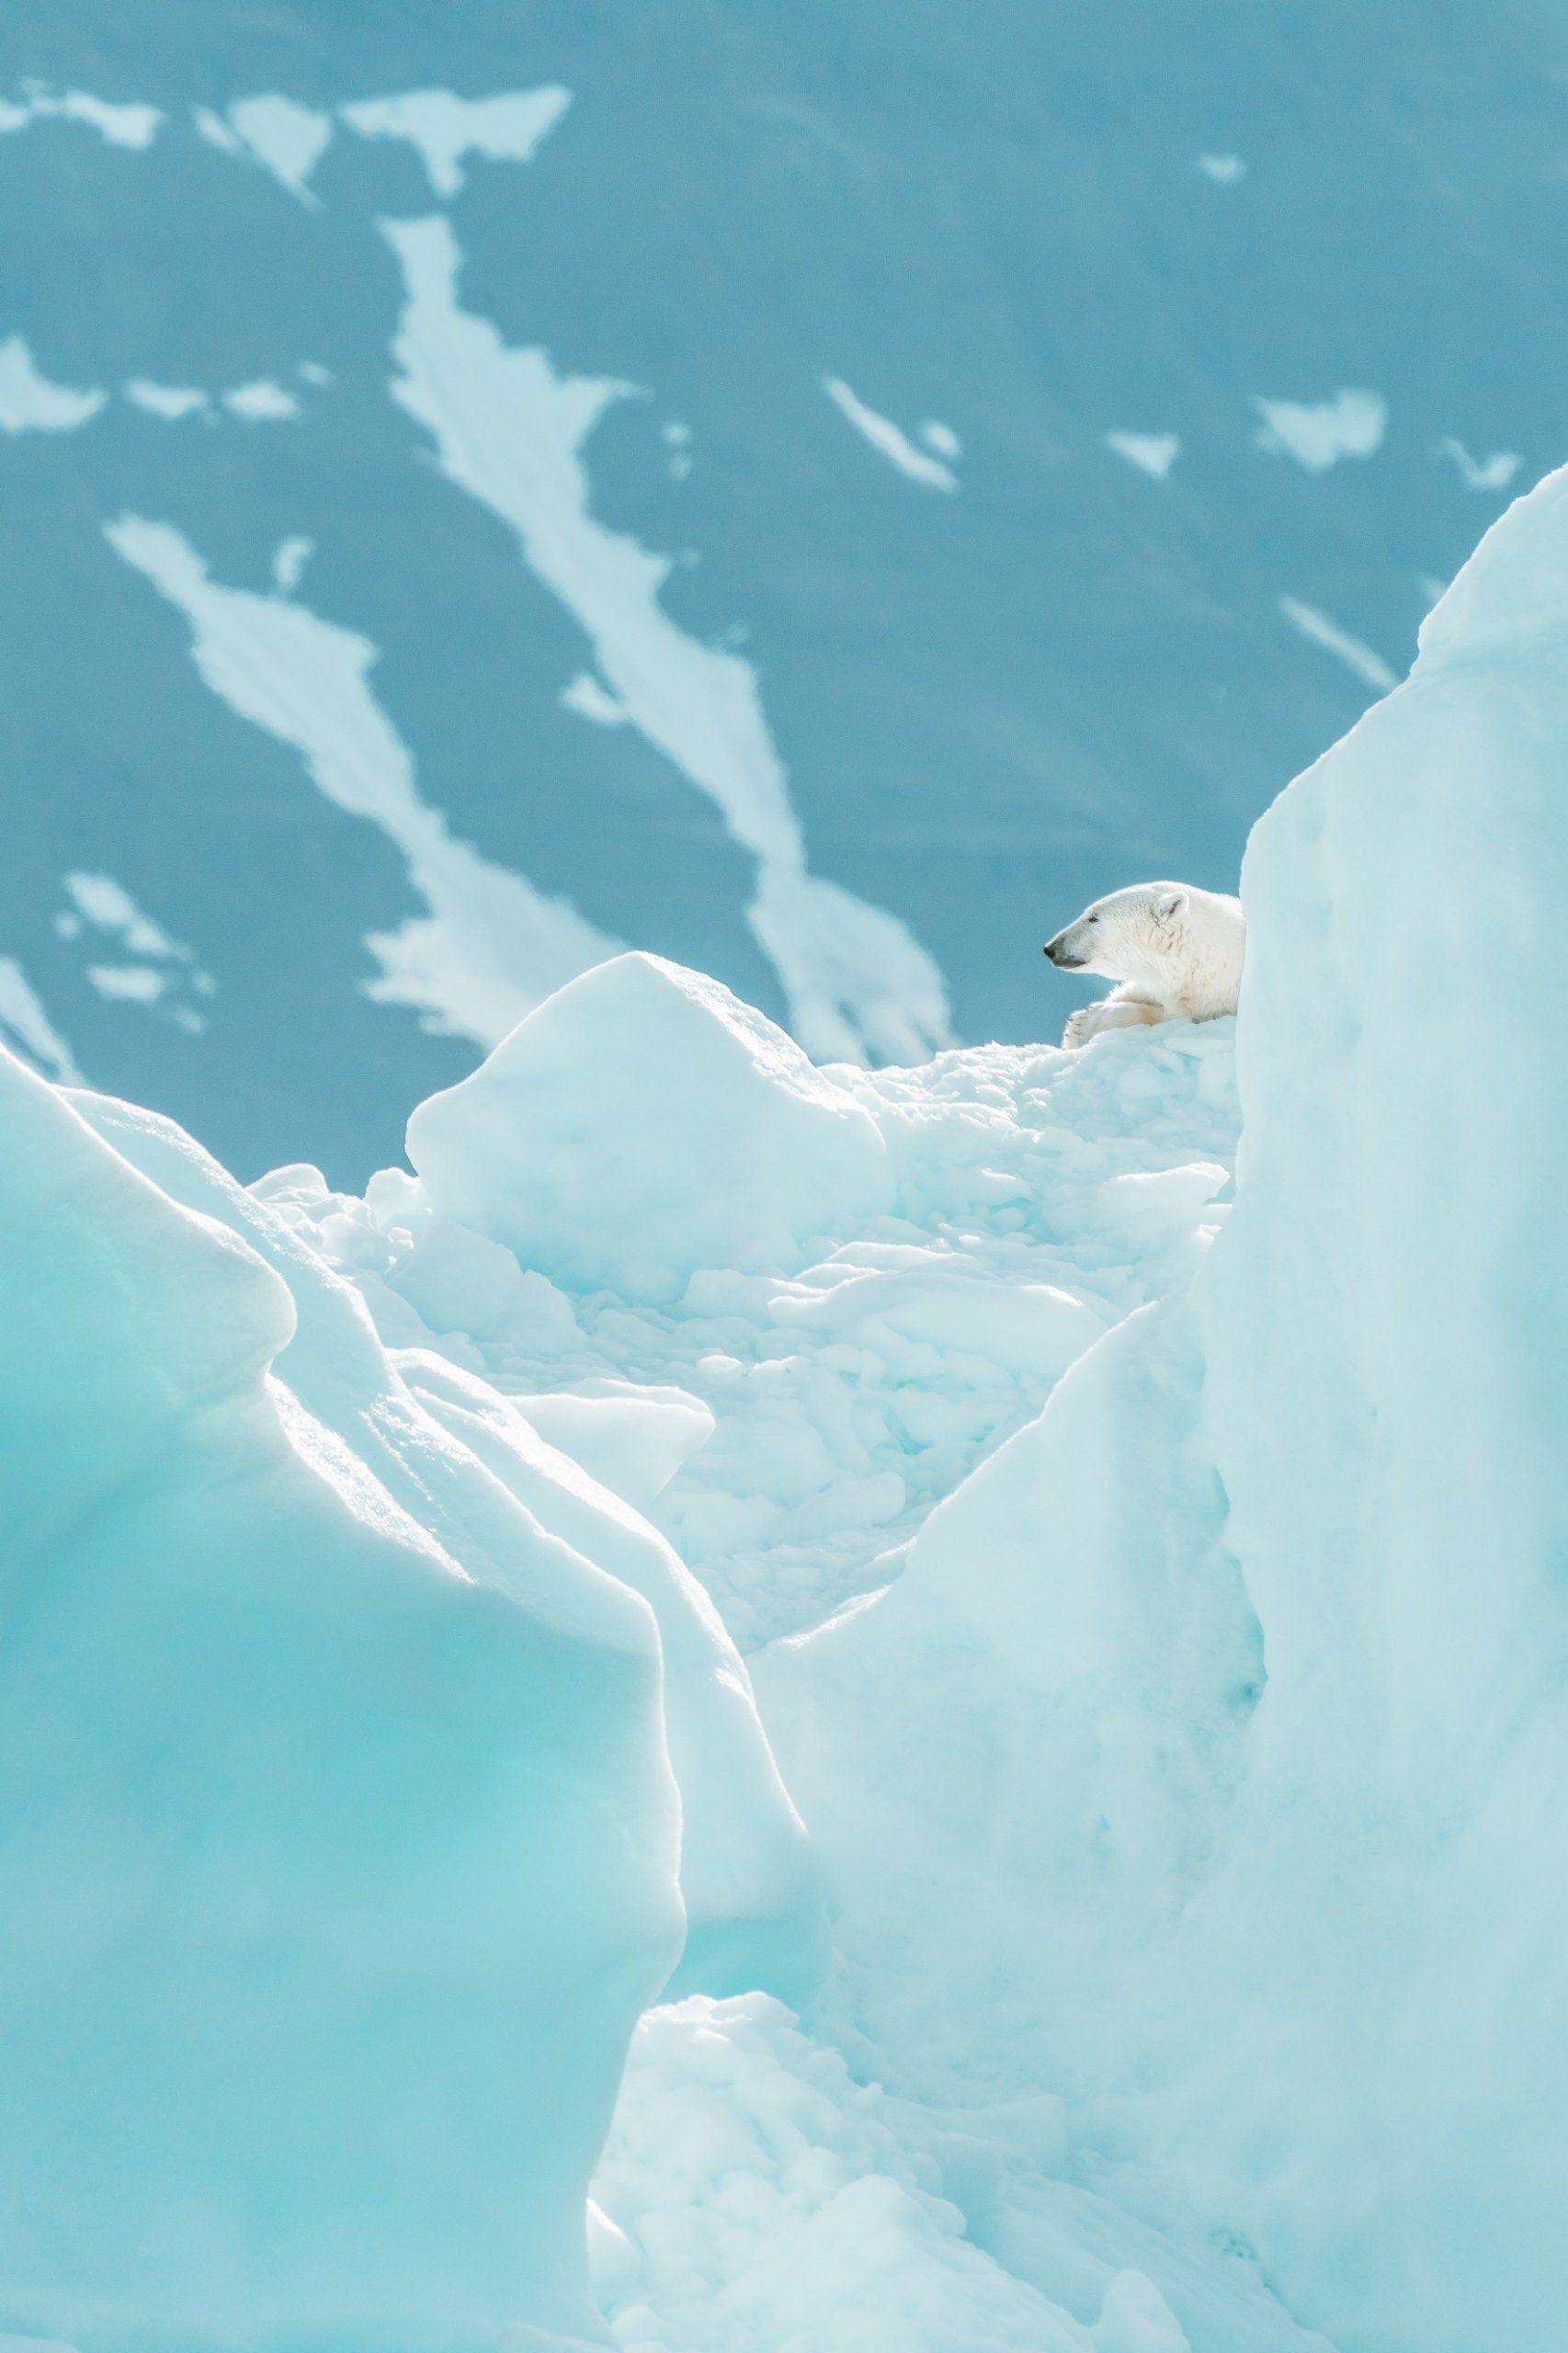 A polar bear resting on ice